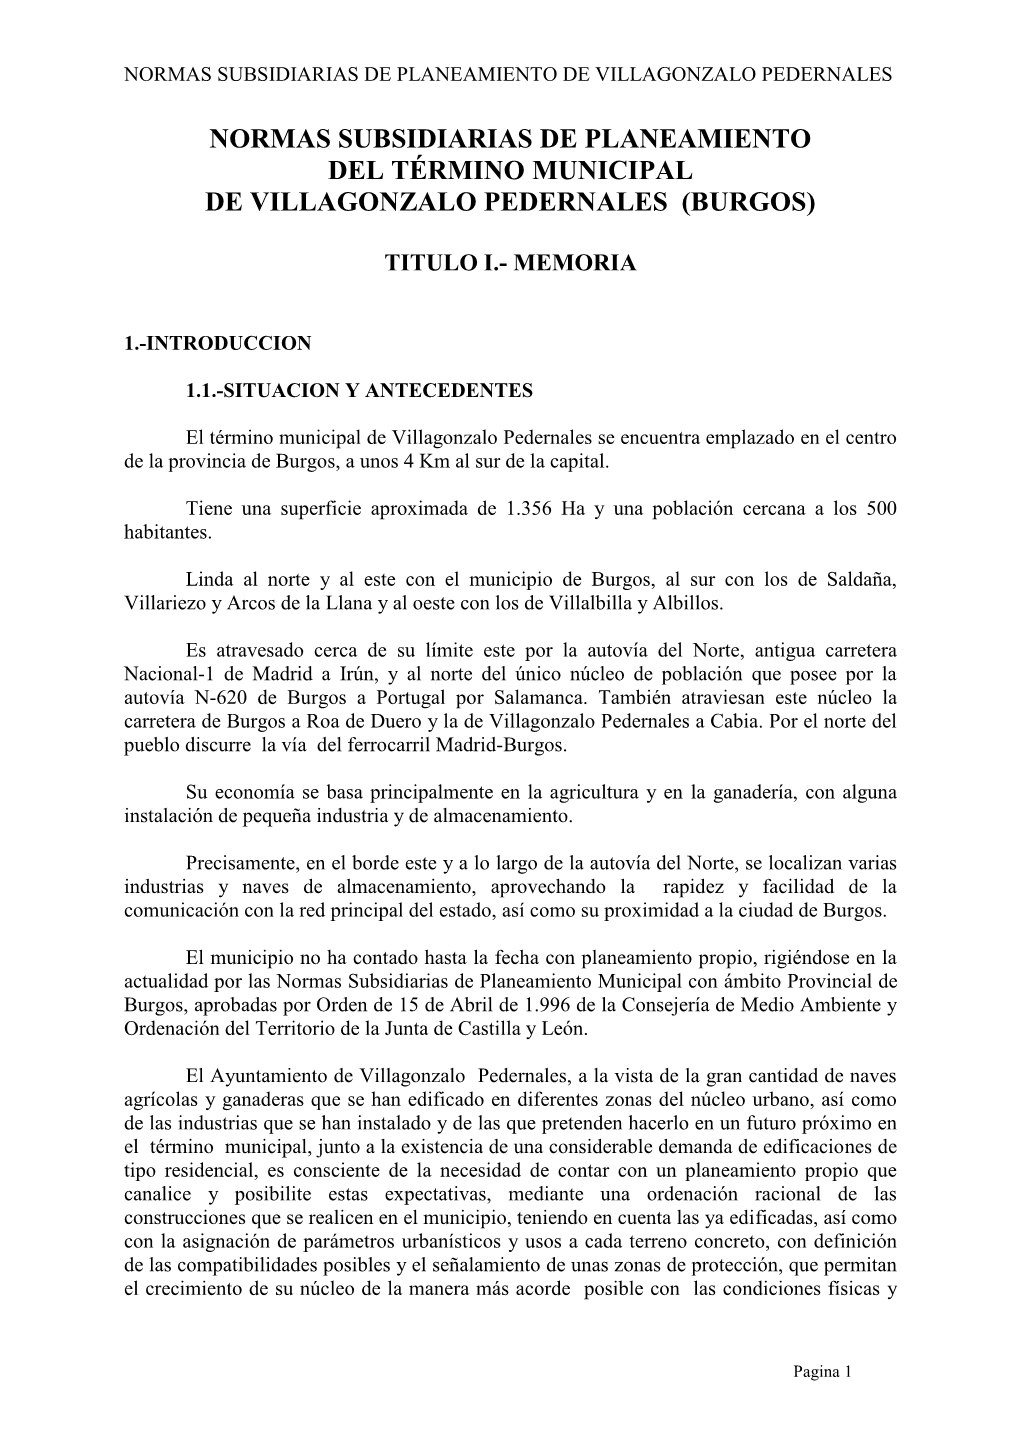 Normas Subsidiarias De Planeamiento Del Término Municipal De Villagonzalo Pedernales (Burgos)